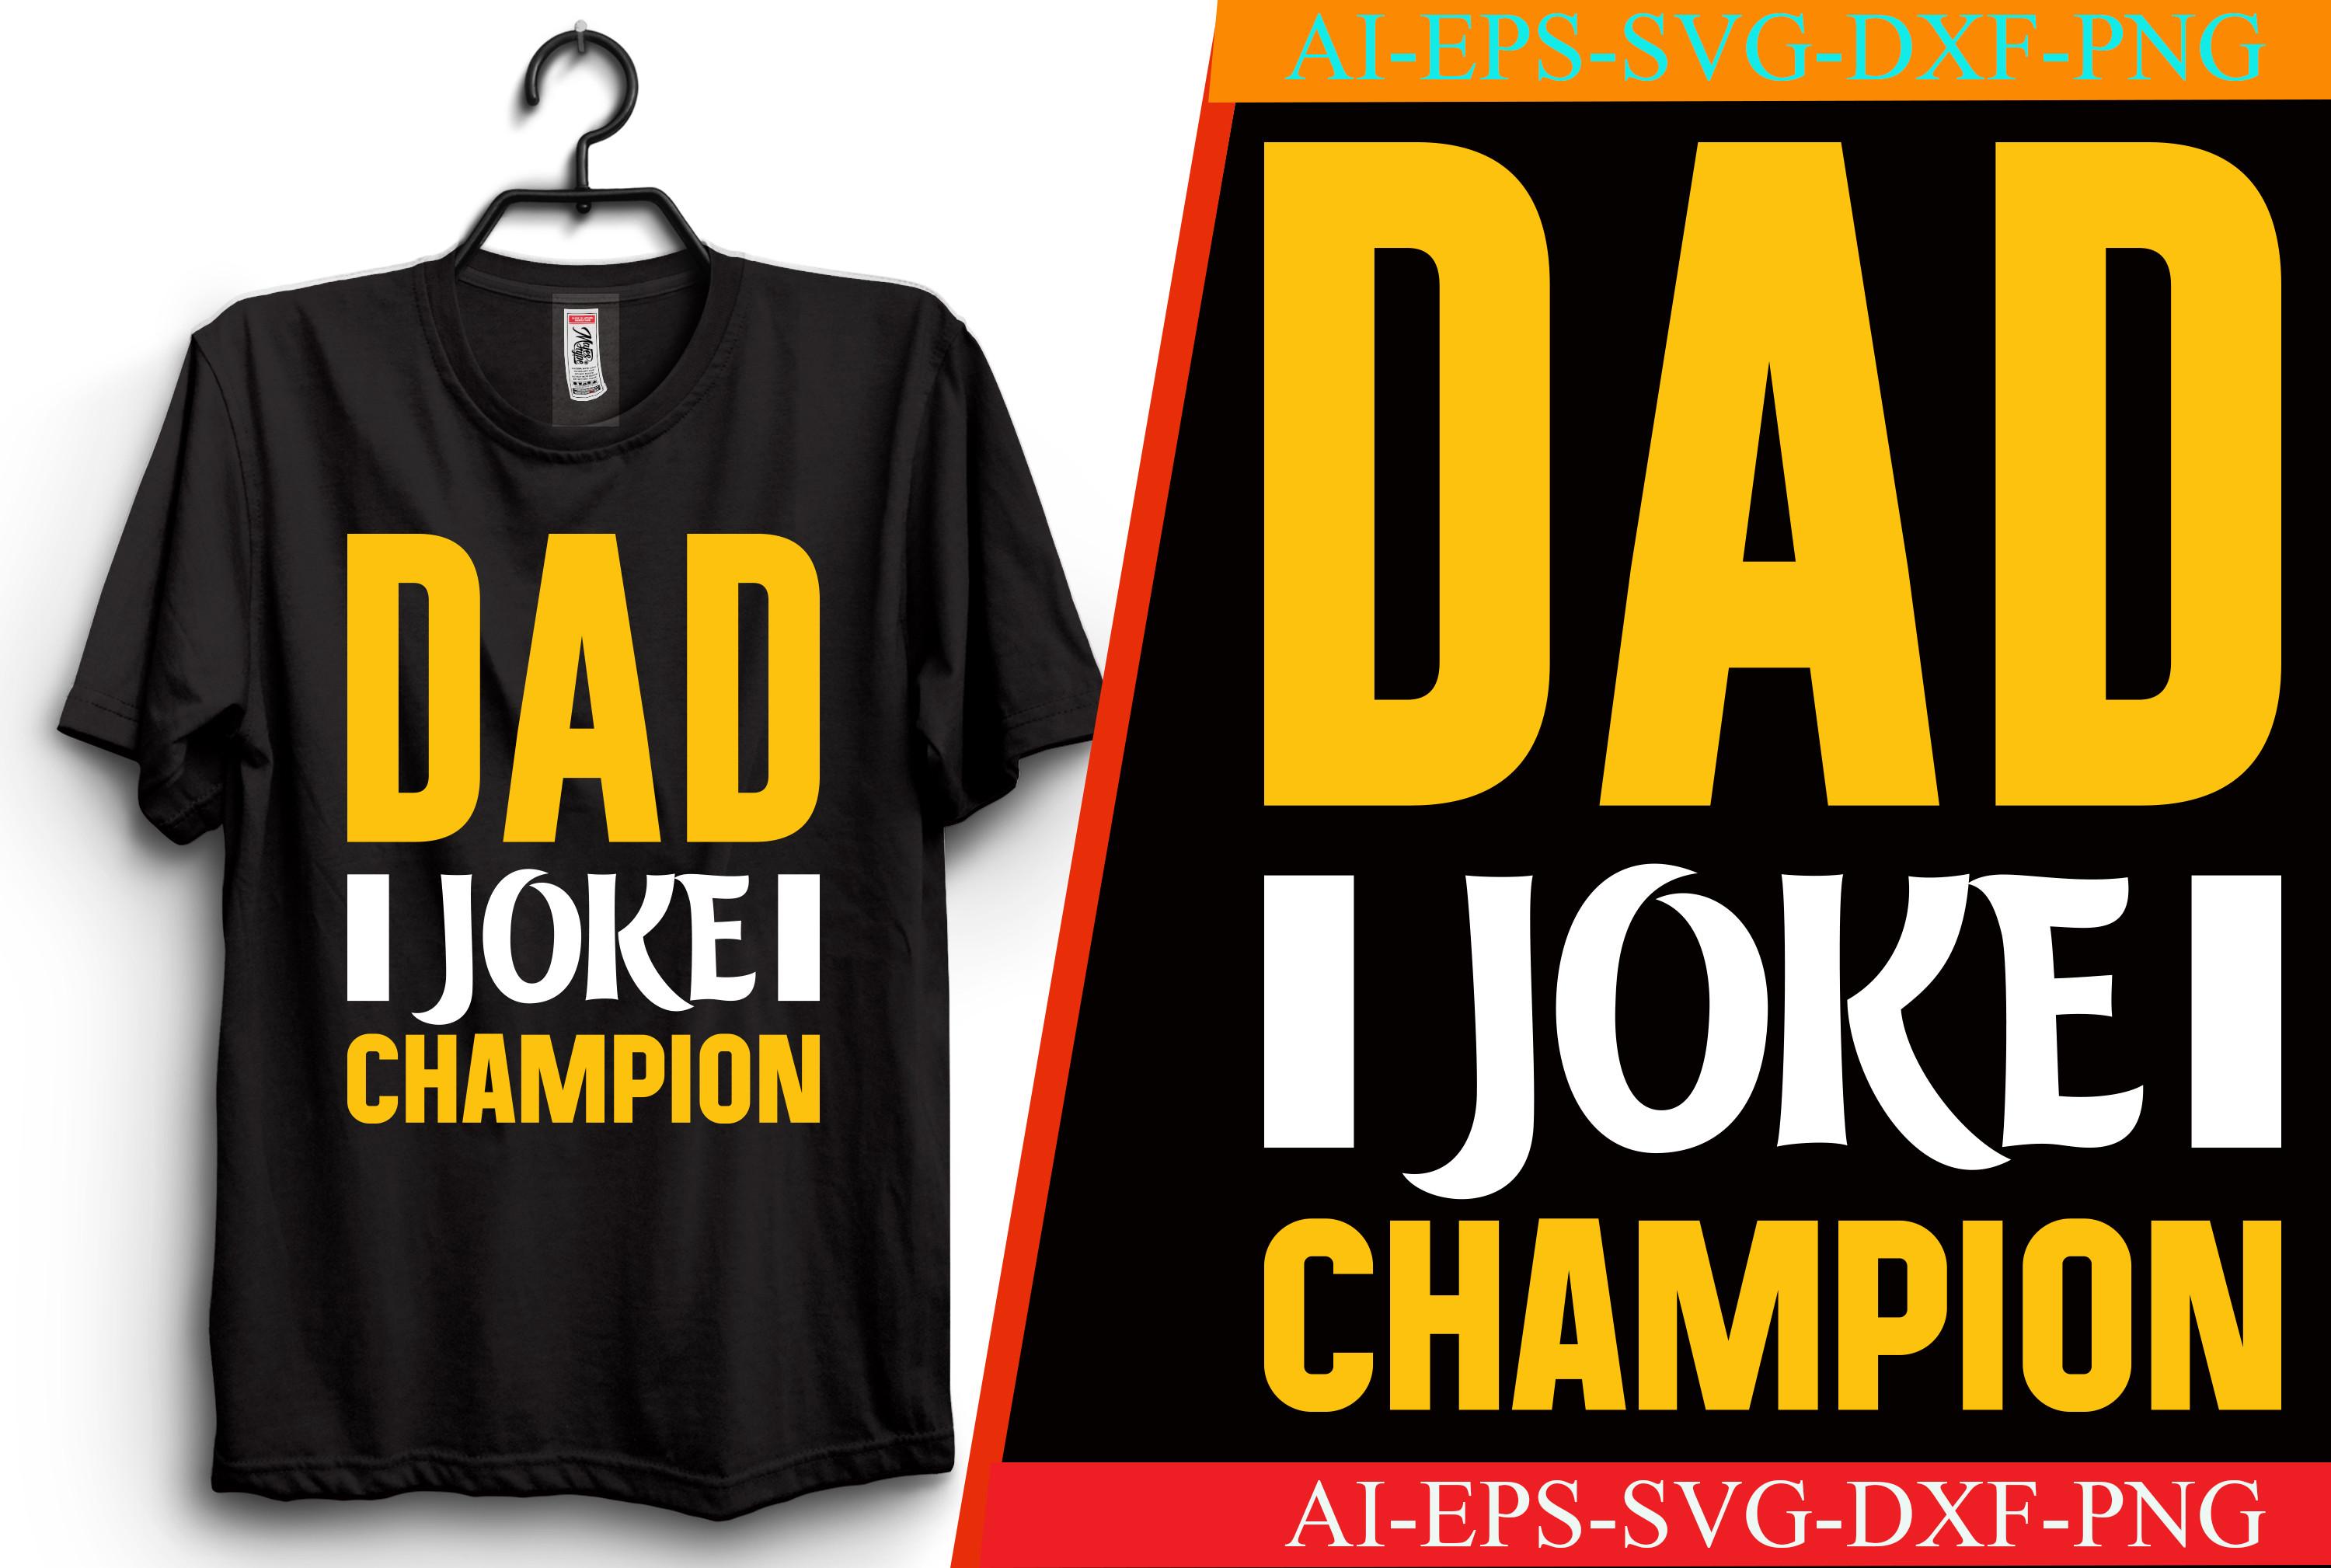 Dad Joke Champion T-shirt Design